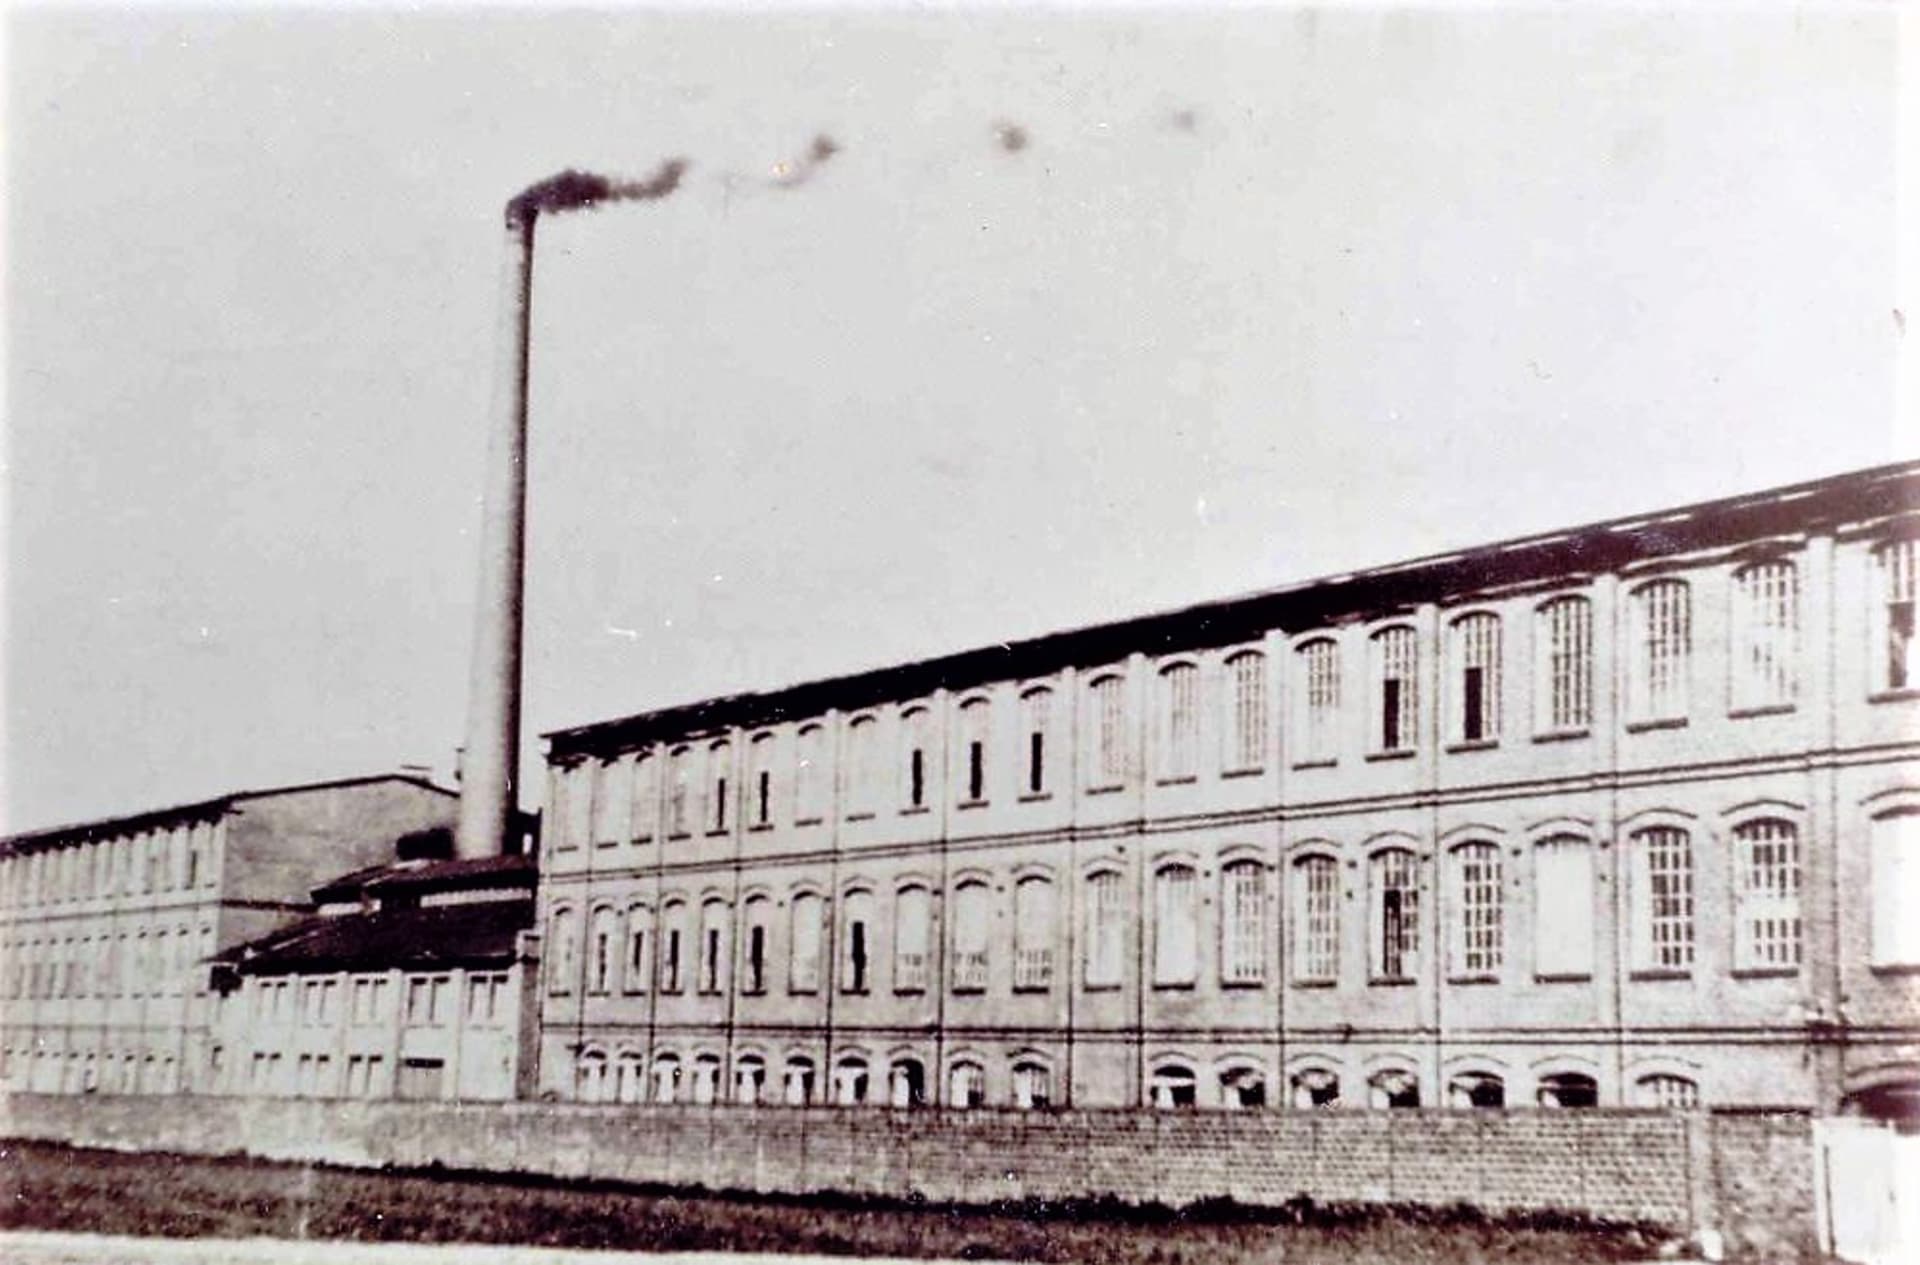 Kietrz, někdejší textilka asi v roce 1940